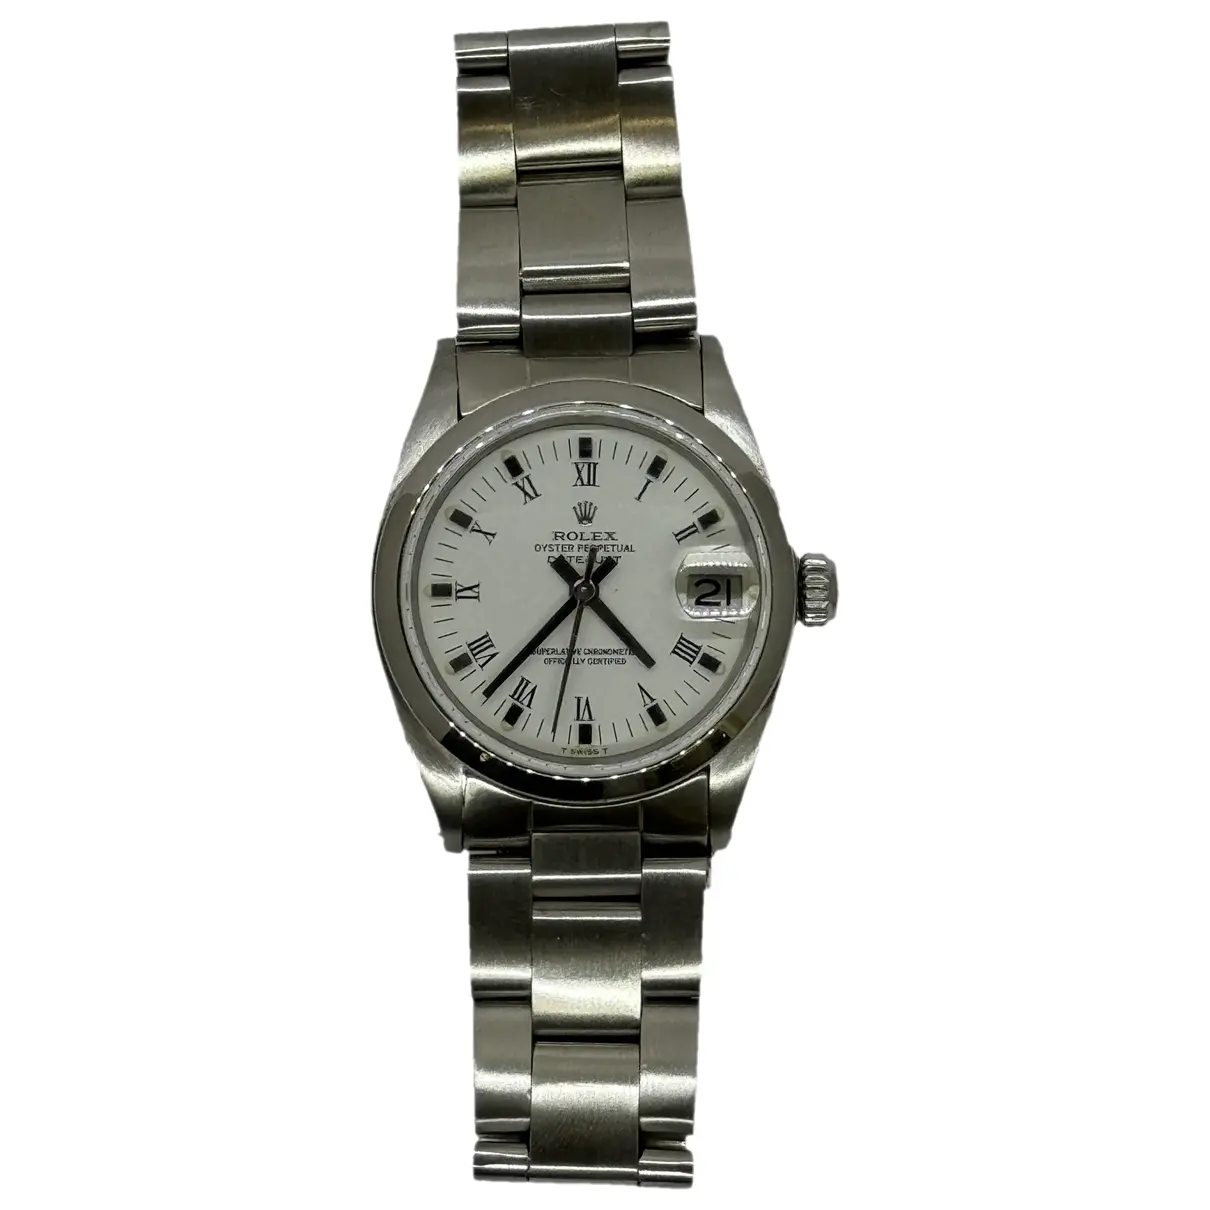 Datejust 31mm watch